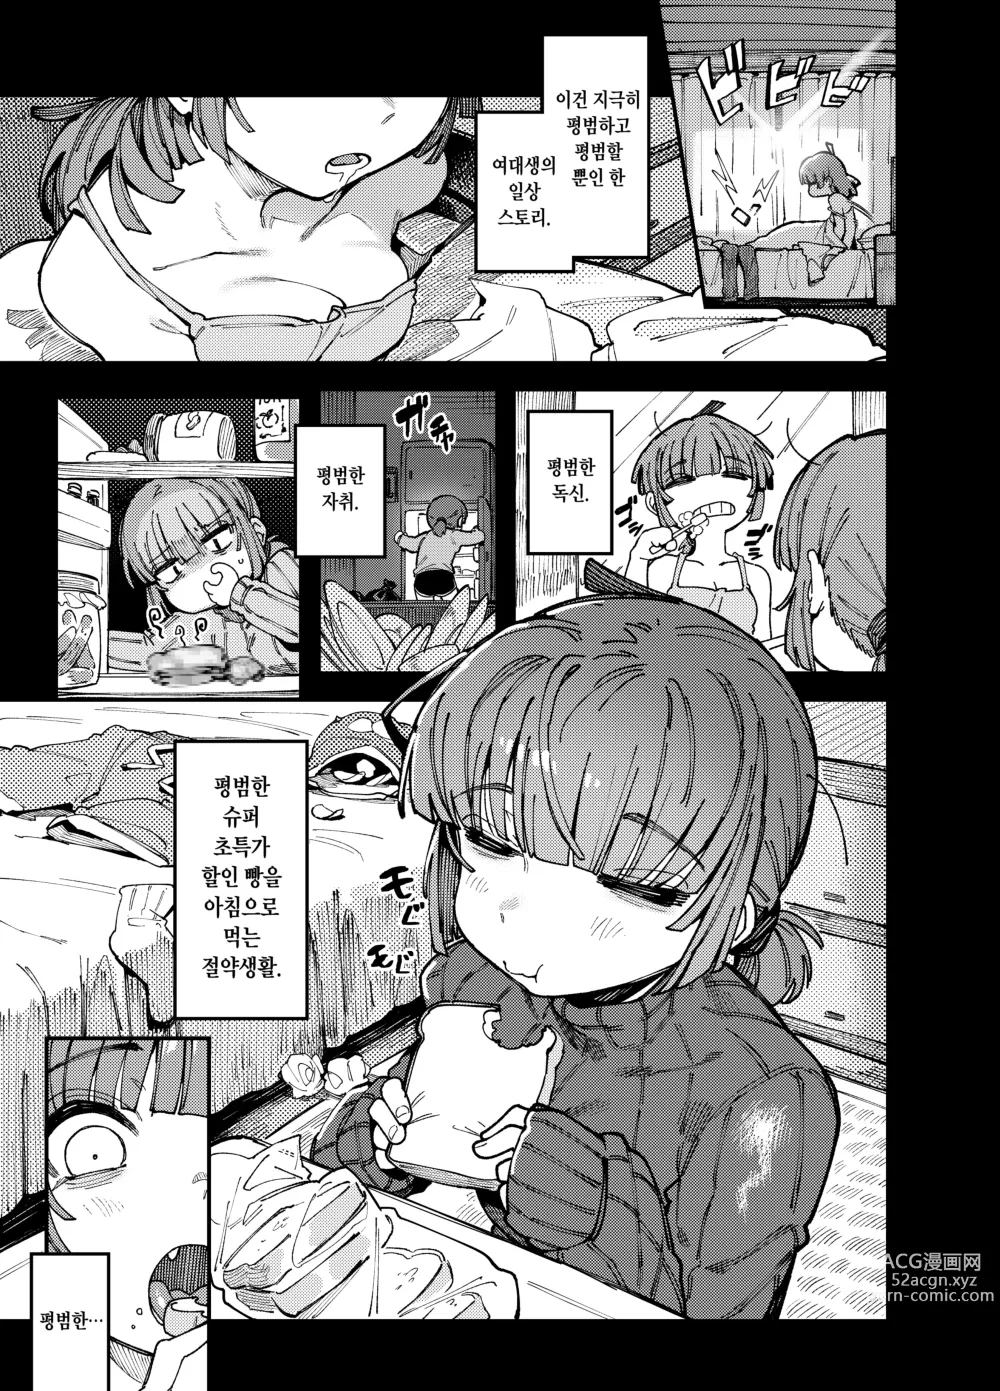 Page 2 of doujinshi 집이 너무 습해서 생긴 환각을 유발하는 버섯을 잘못 먹고 발정난 뒤의 이야기